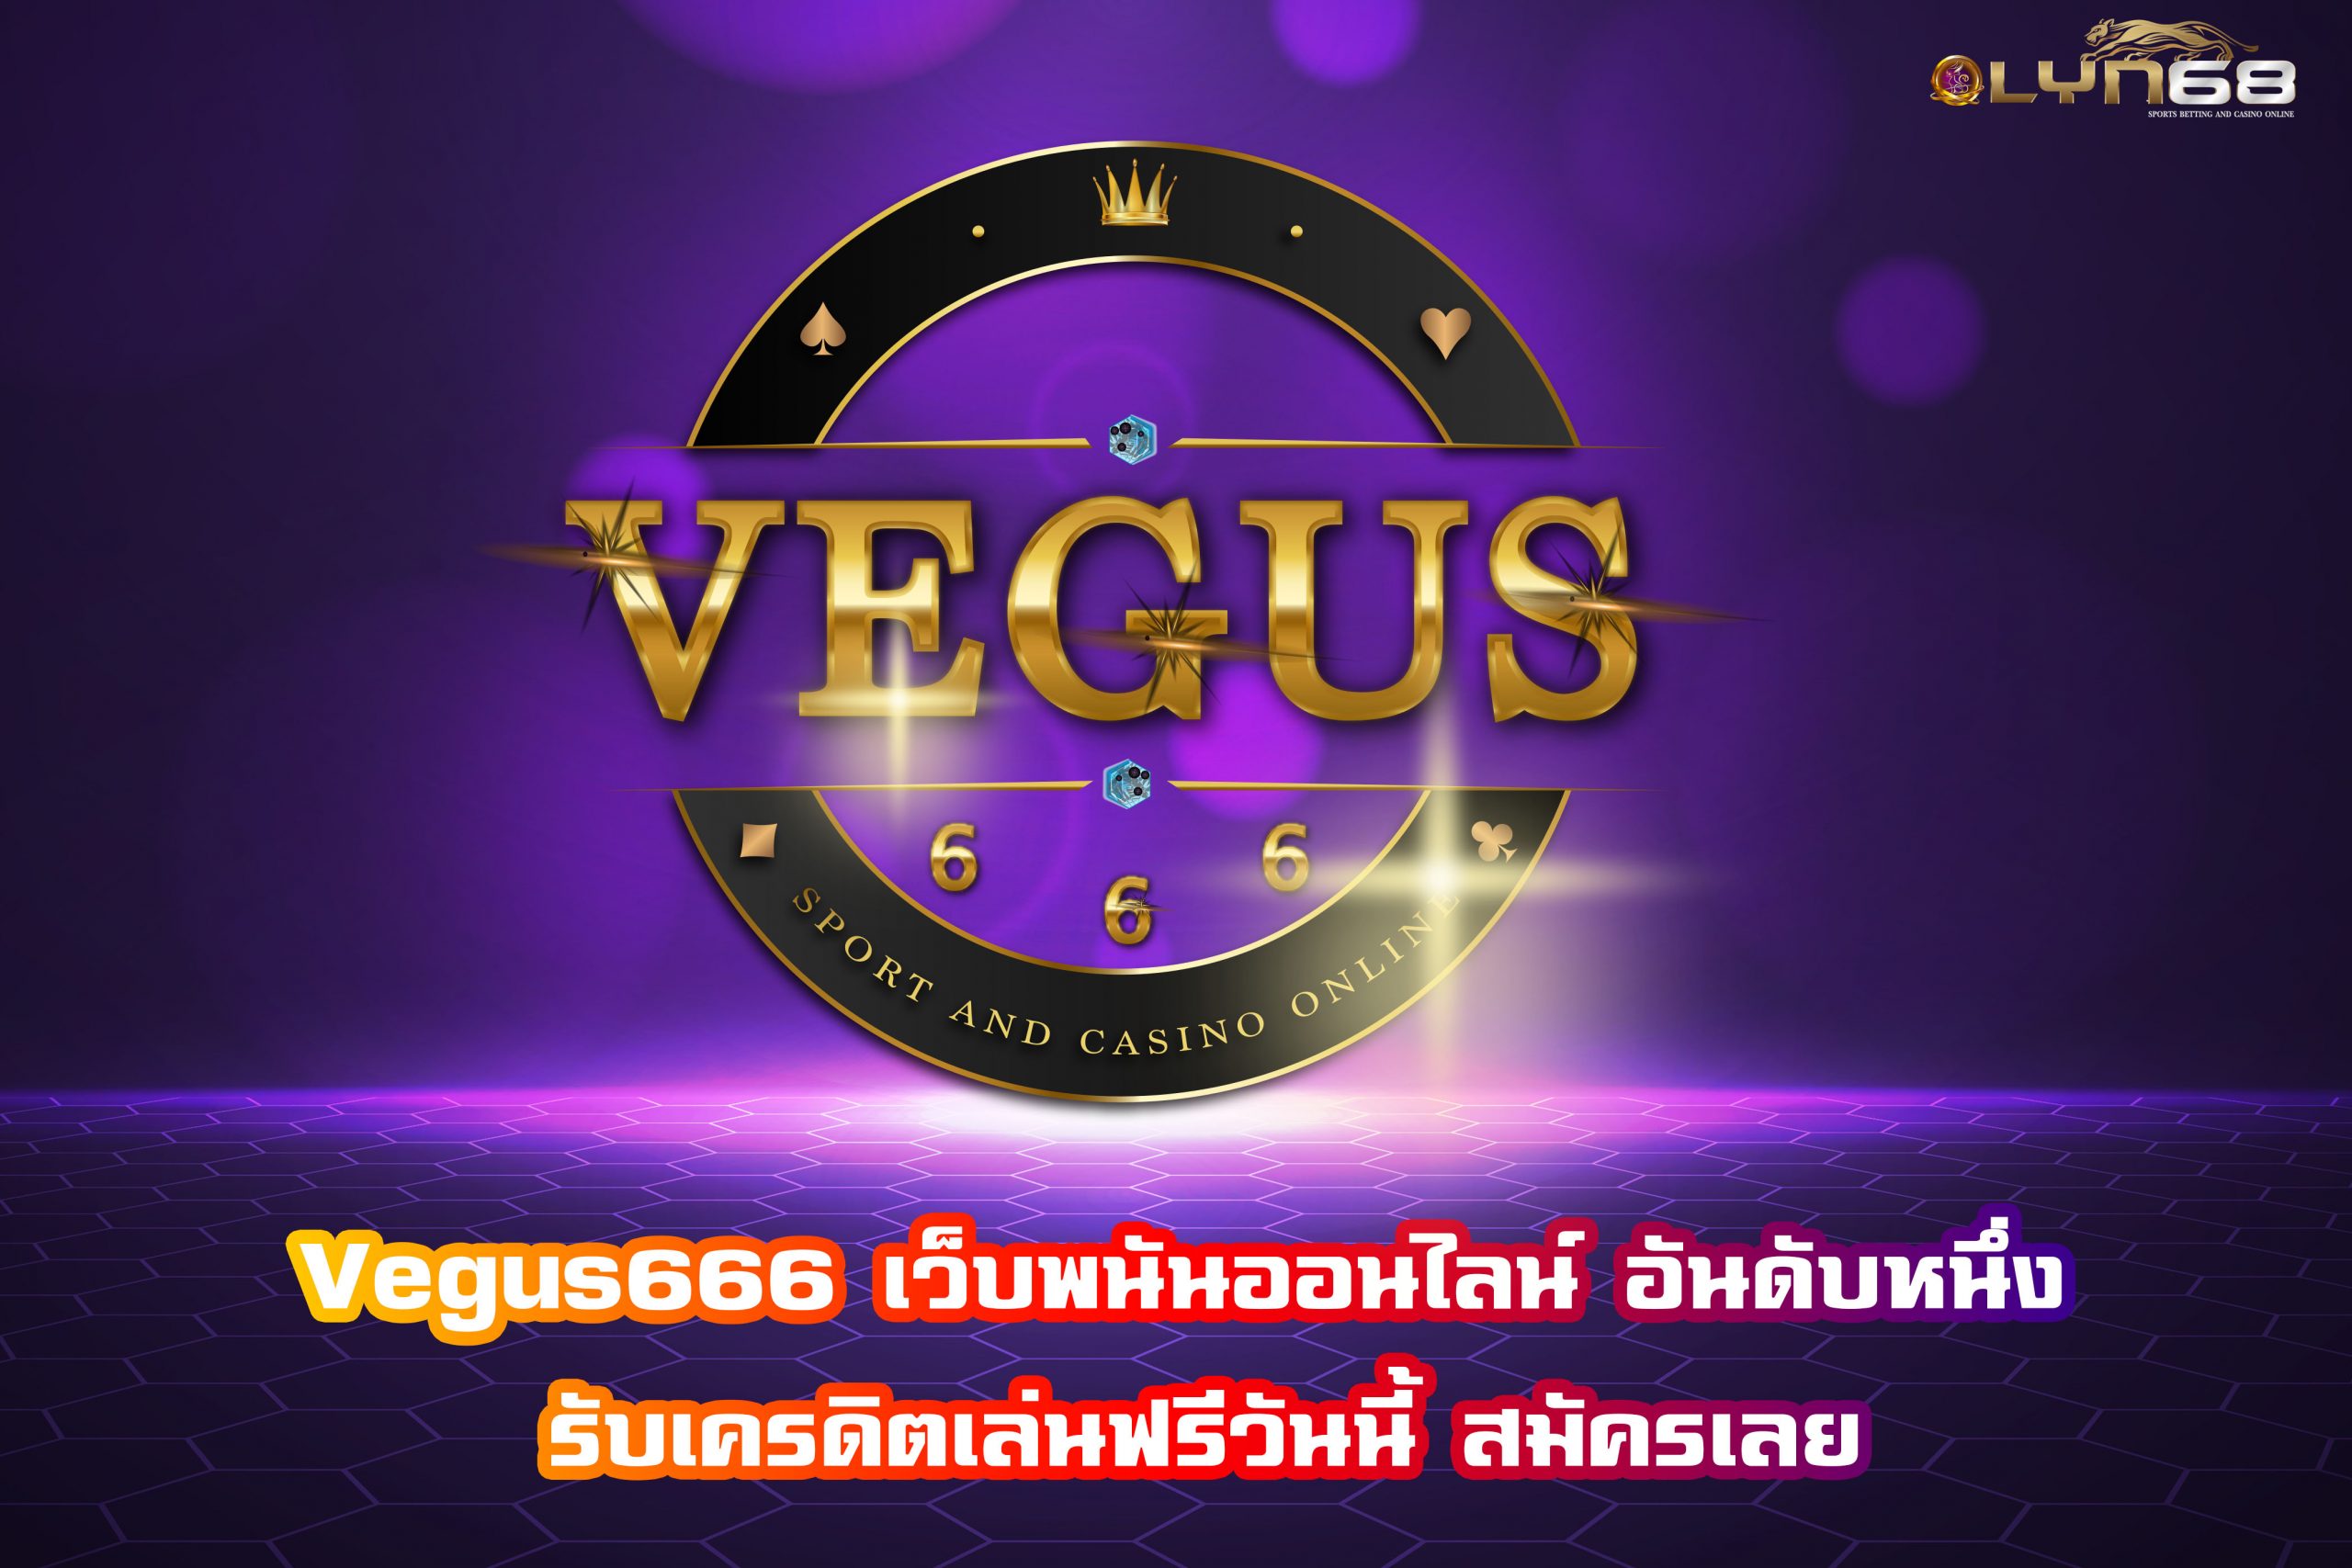 Vegus666 เว็บพนันออนไลน์ อันดับหนึ่ง รับเครดิตเล่นฟรีวันนี้ สมัครเลย